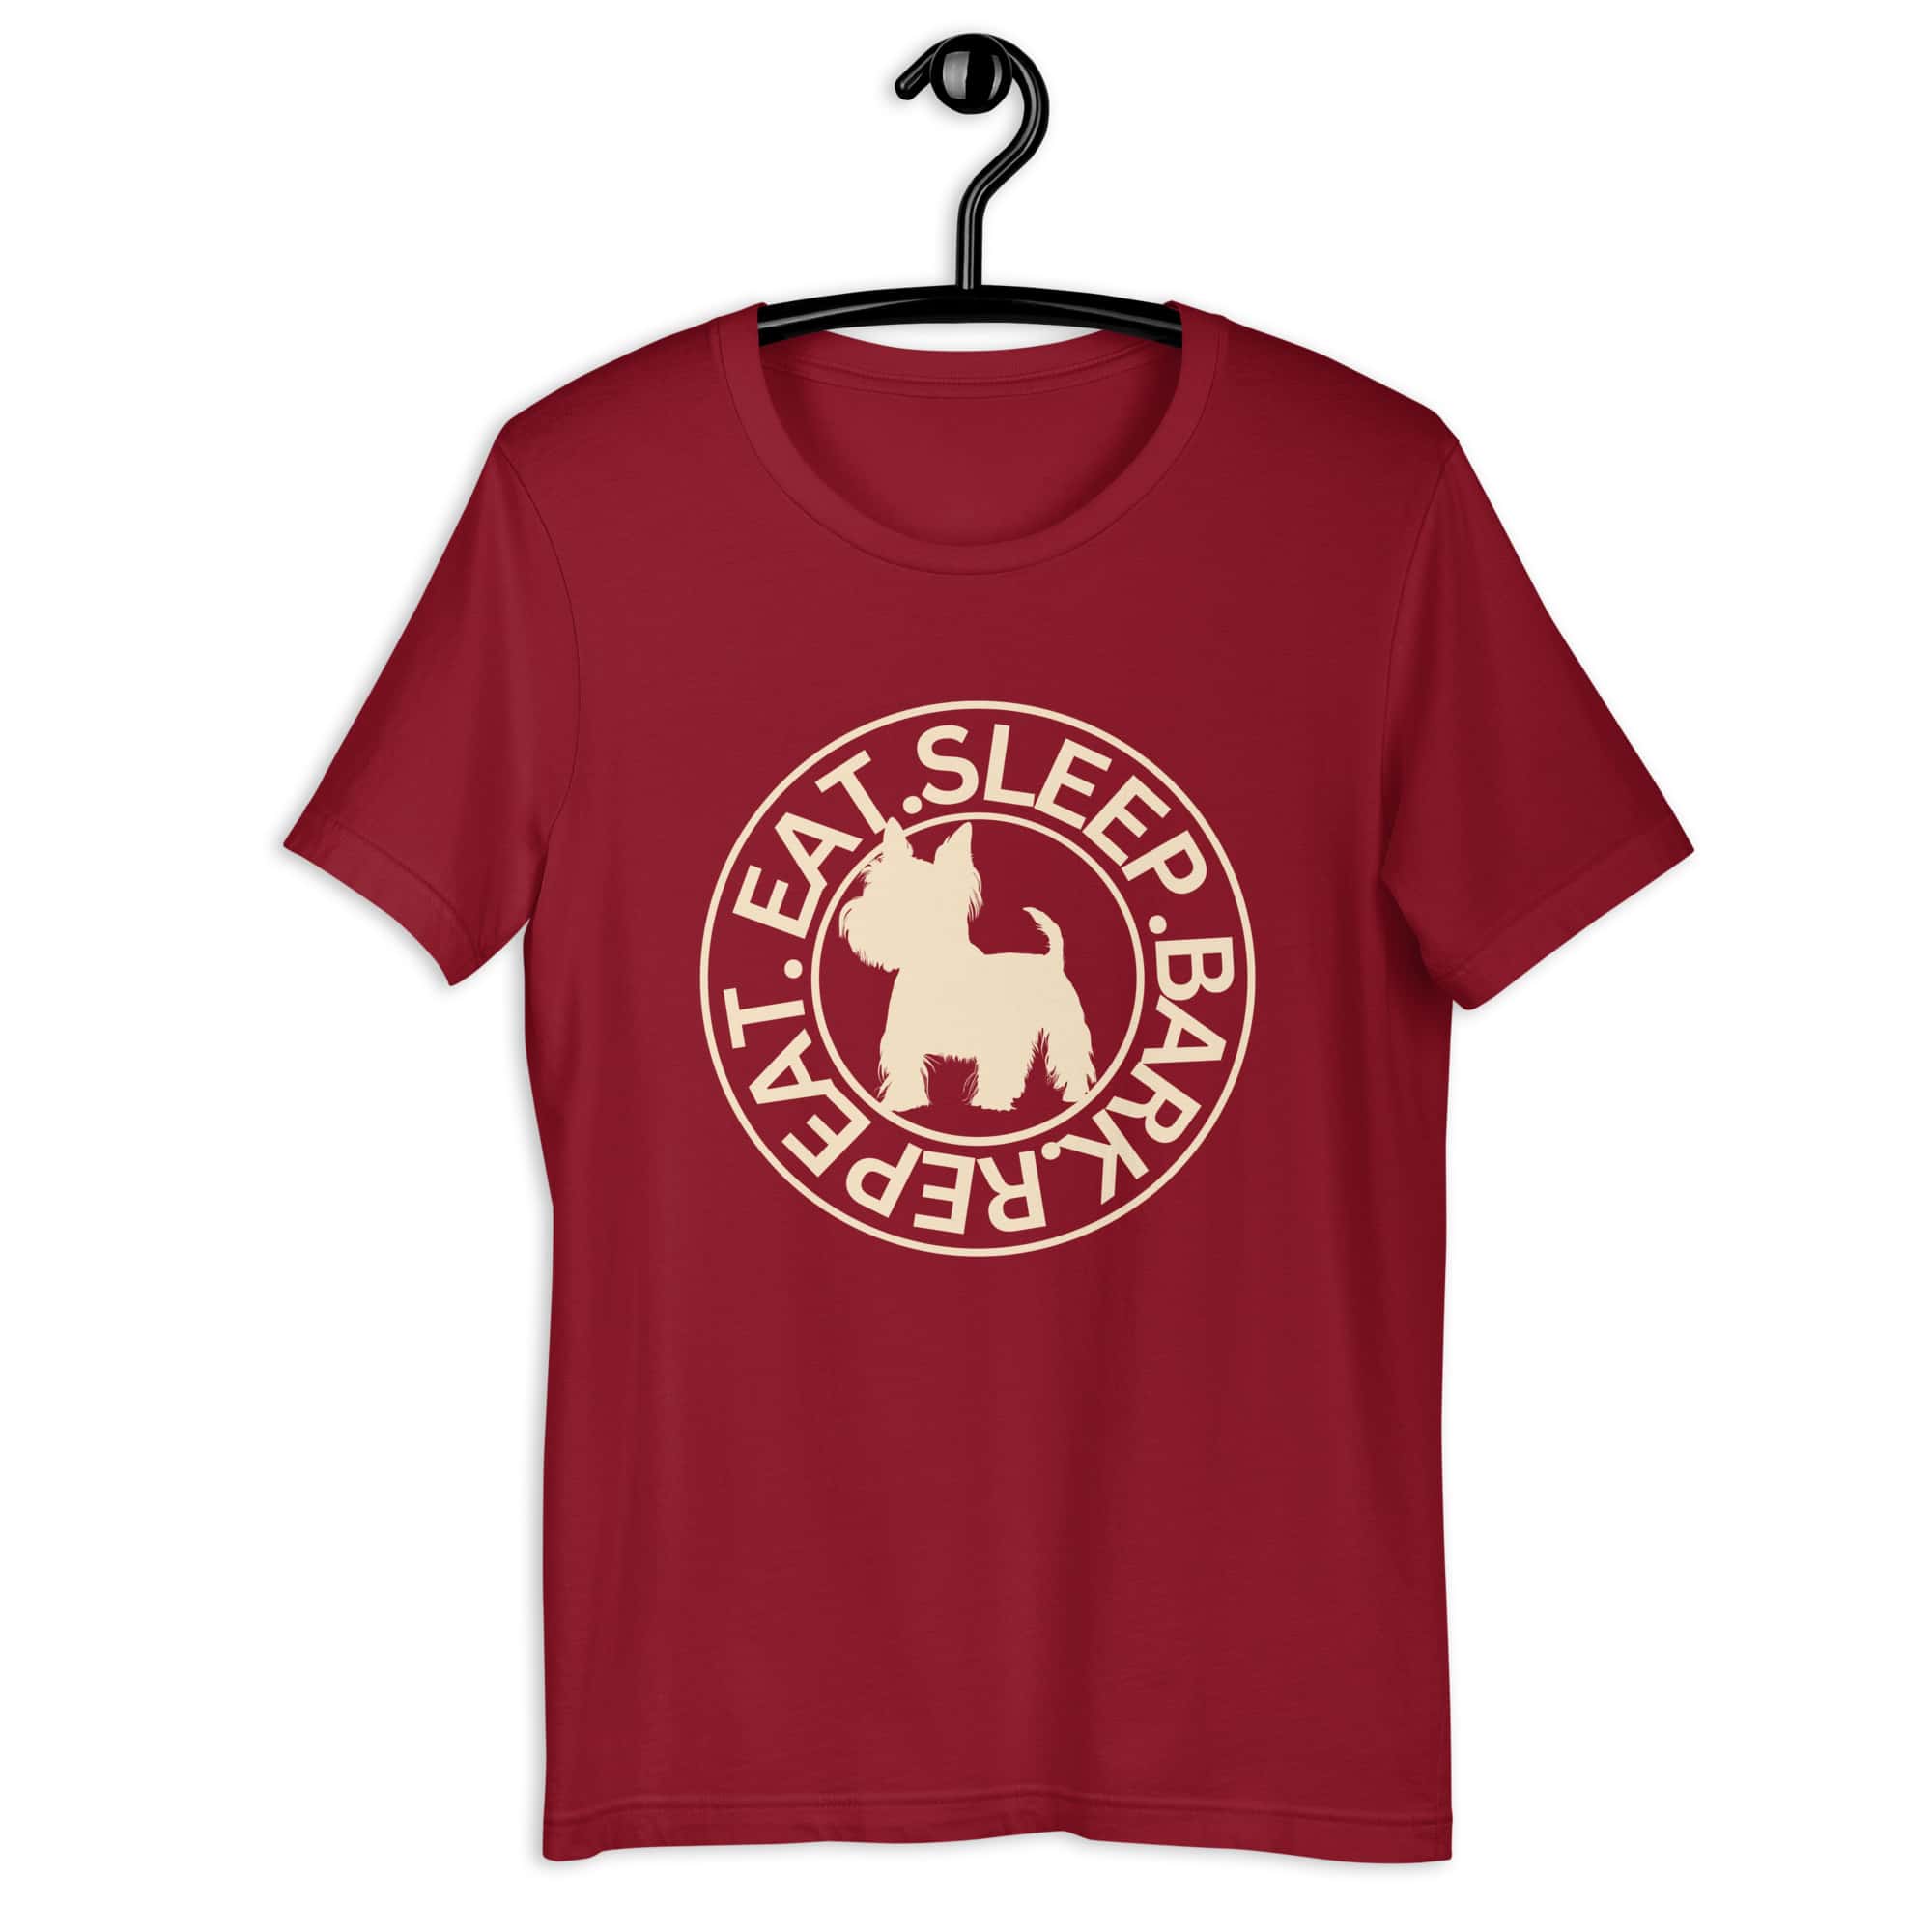 Eat Sleep Bark Repeat Biewer Terrier Unisex T-Shirt. Cardinal